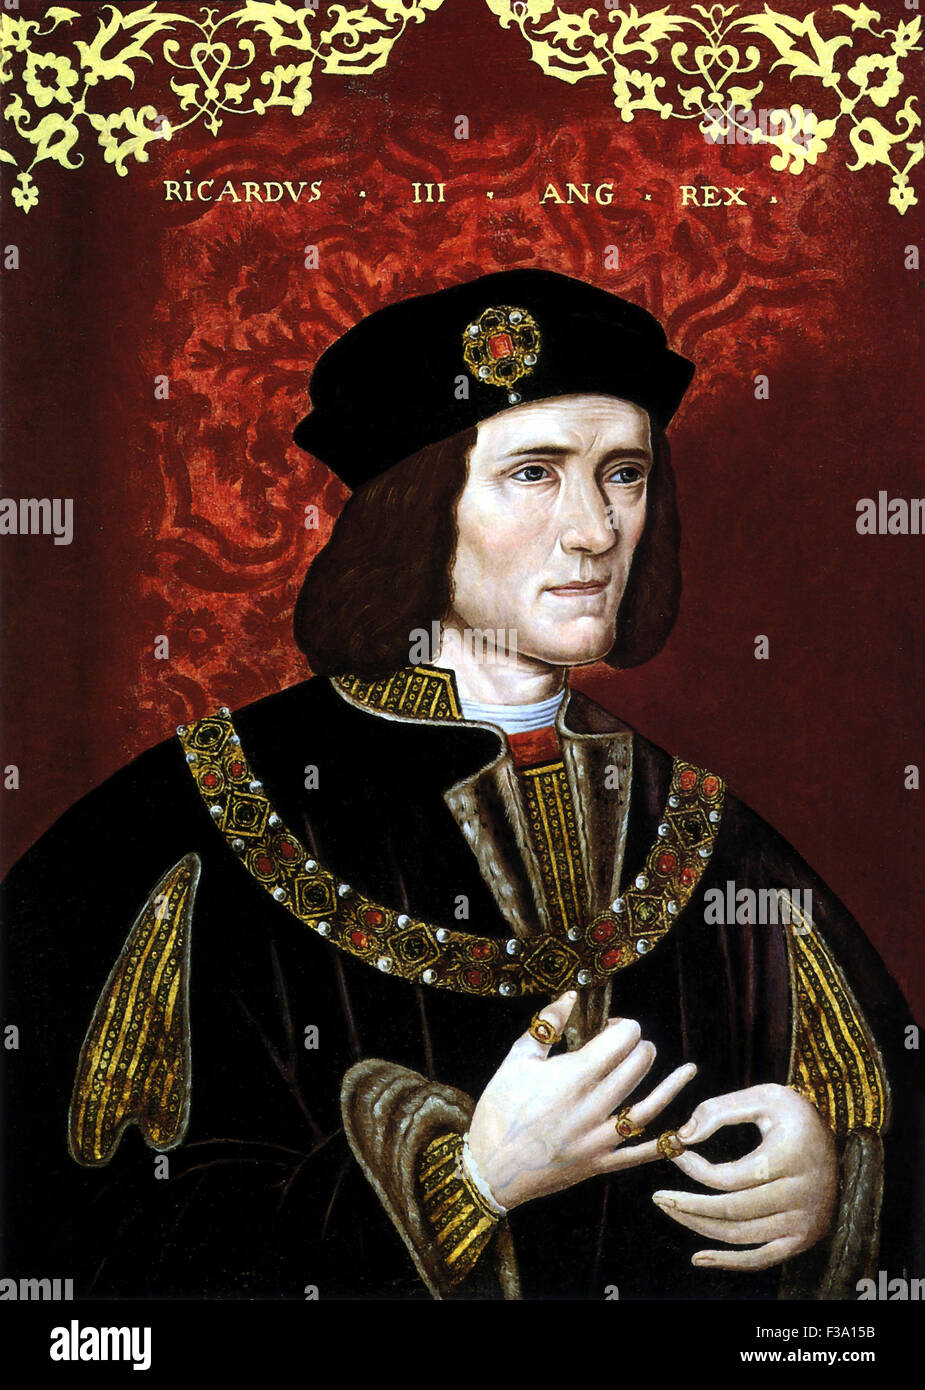 Vintage portrait of King Richard III of England. Stock Photo